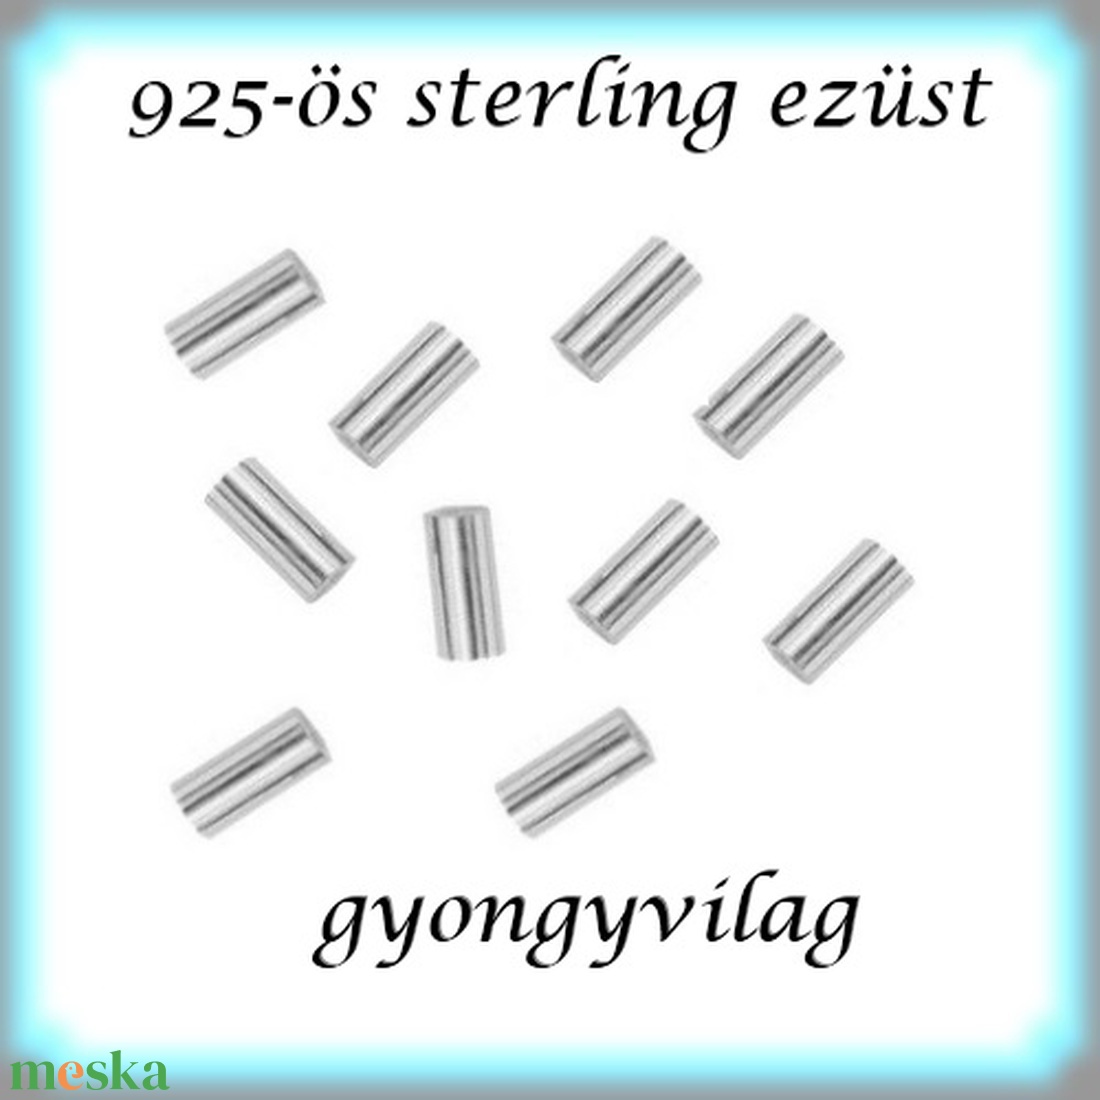 925-ös ezüst köztes / gyöngy / dísz EKÖ 19 1,5x2x0,3  10db/cs - gyöngy, ékszerkellék - fém köztesek - Meska.hu